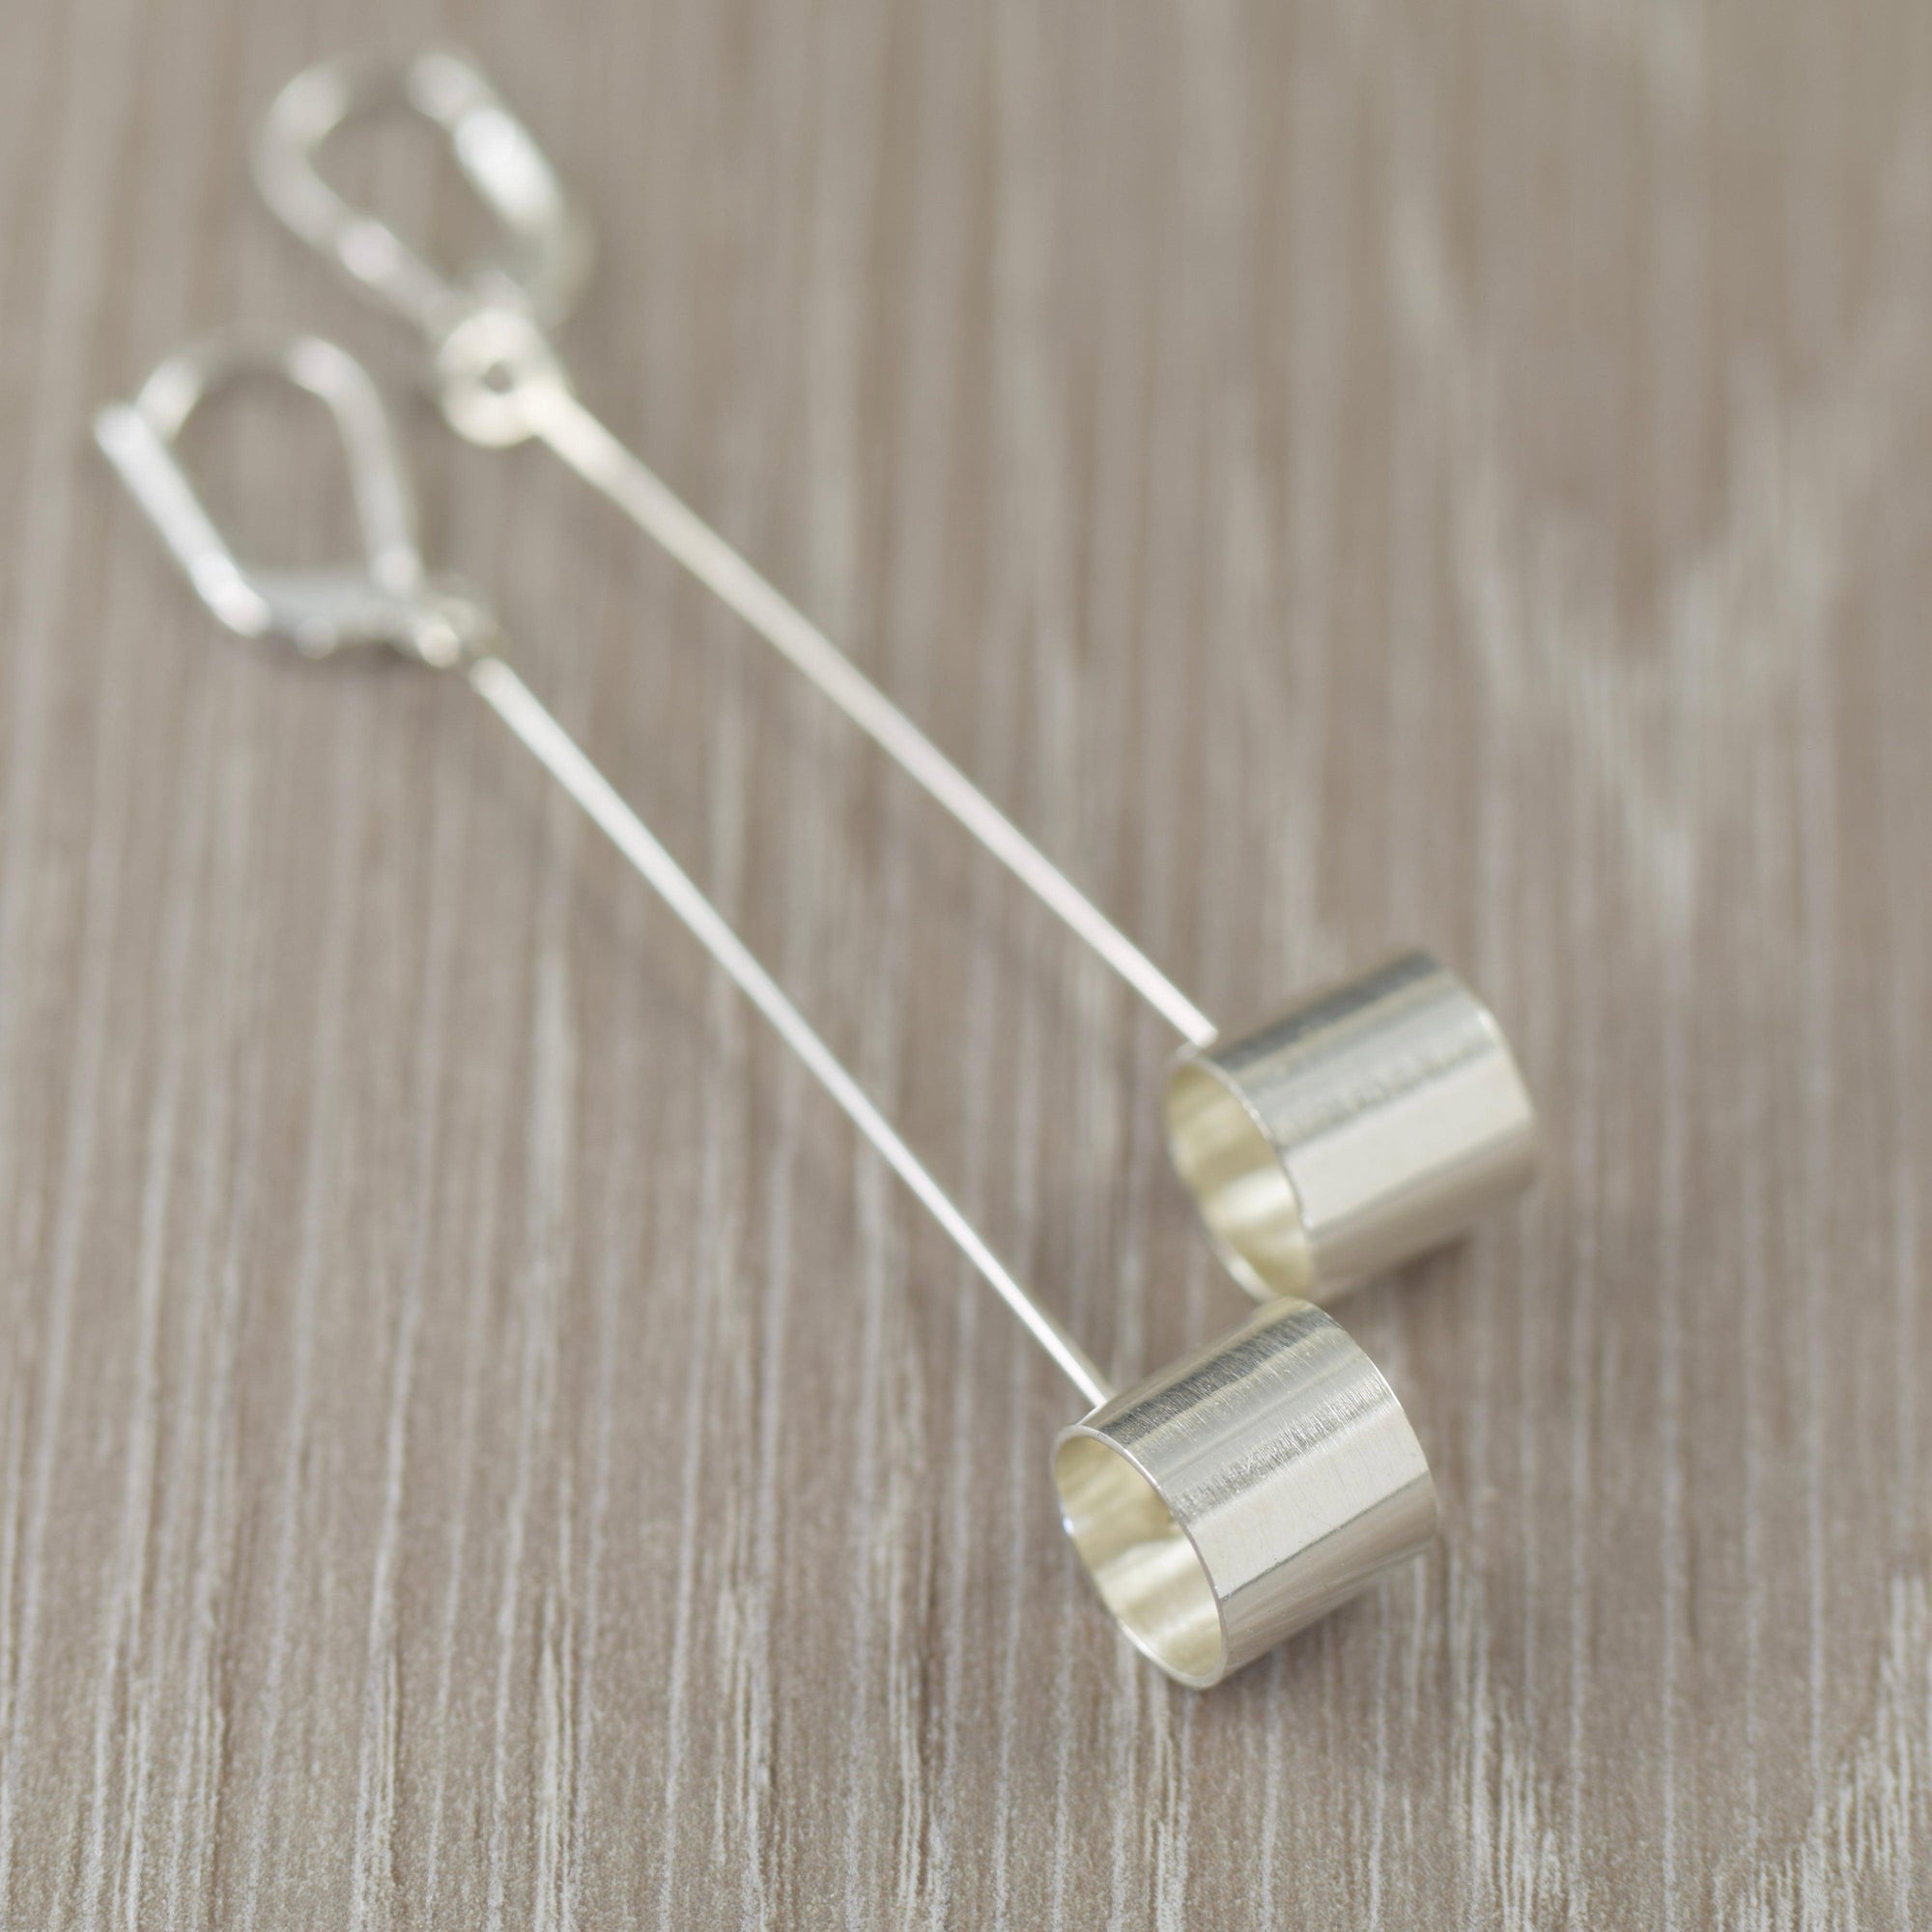 Long sterling silver dangle earrings